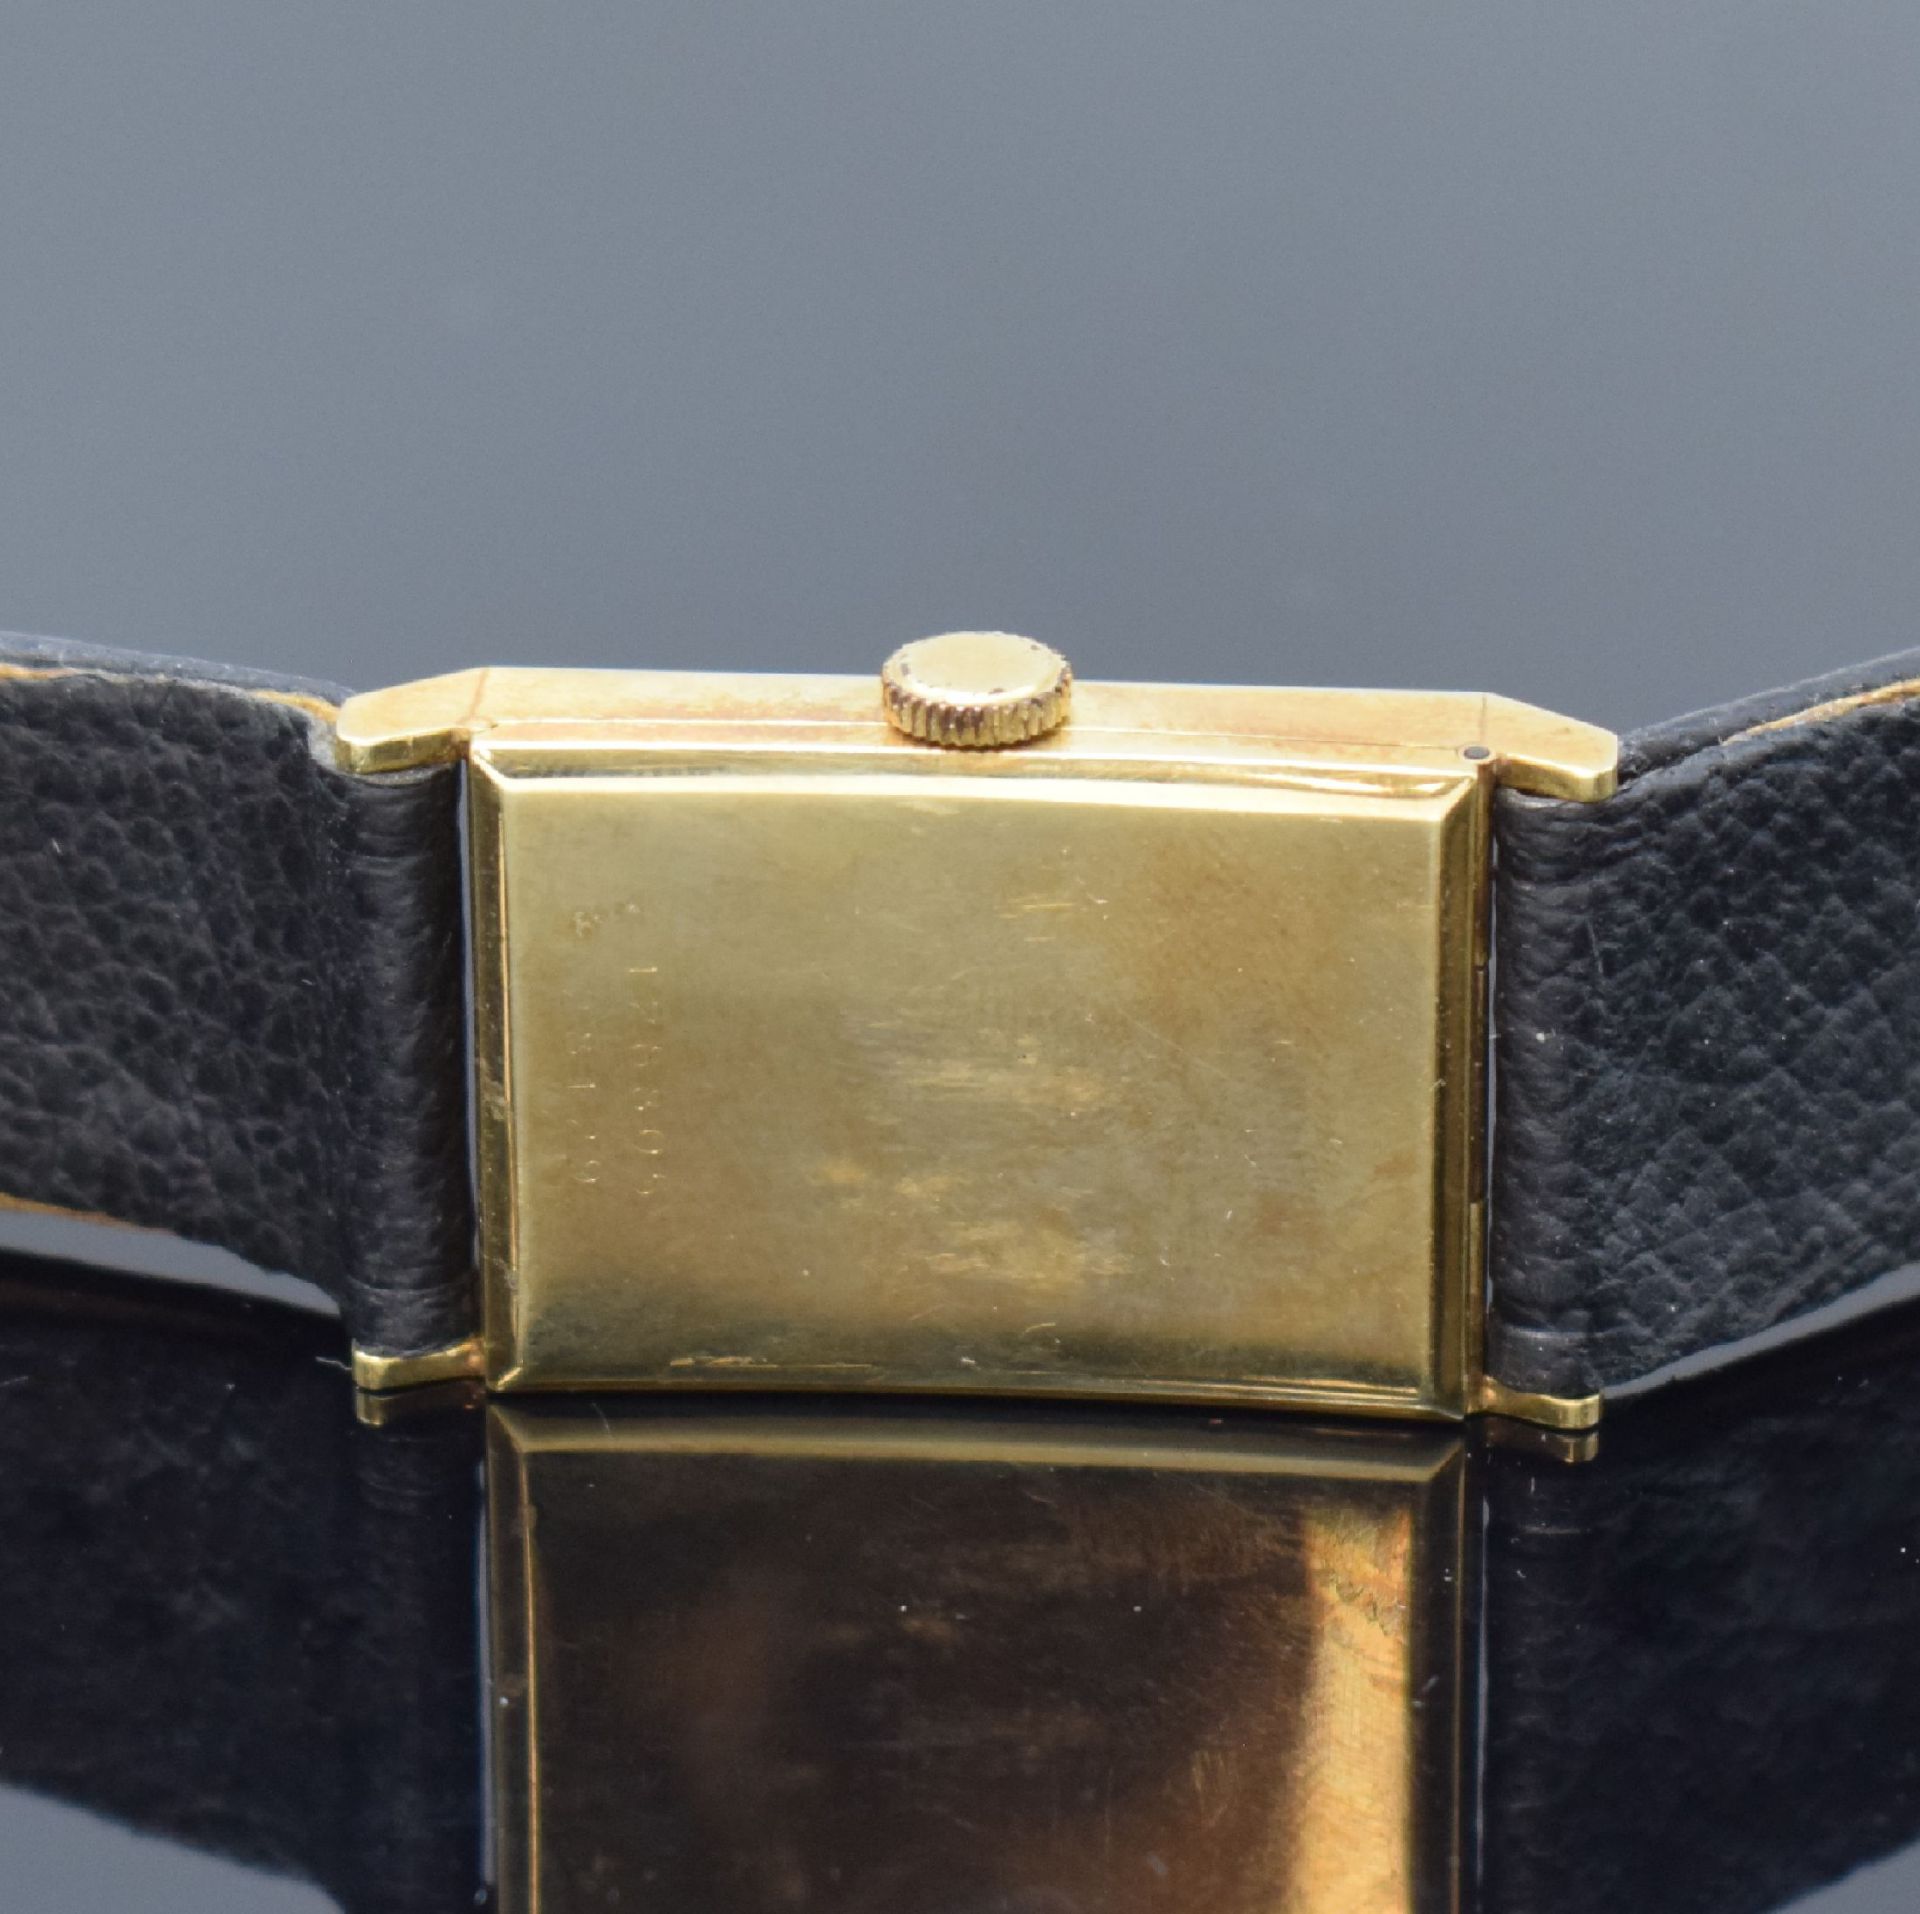 STOWA Extra rechteckige Armbanduhr in GG 585/000, - Bild 4 aus 6